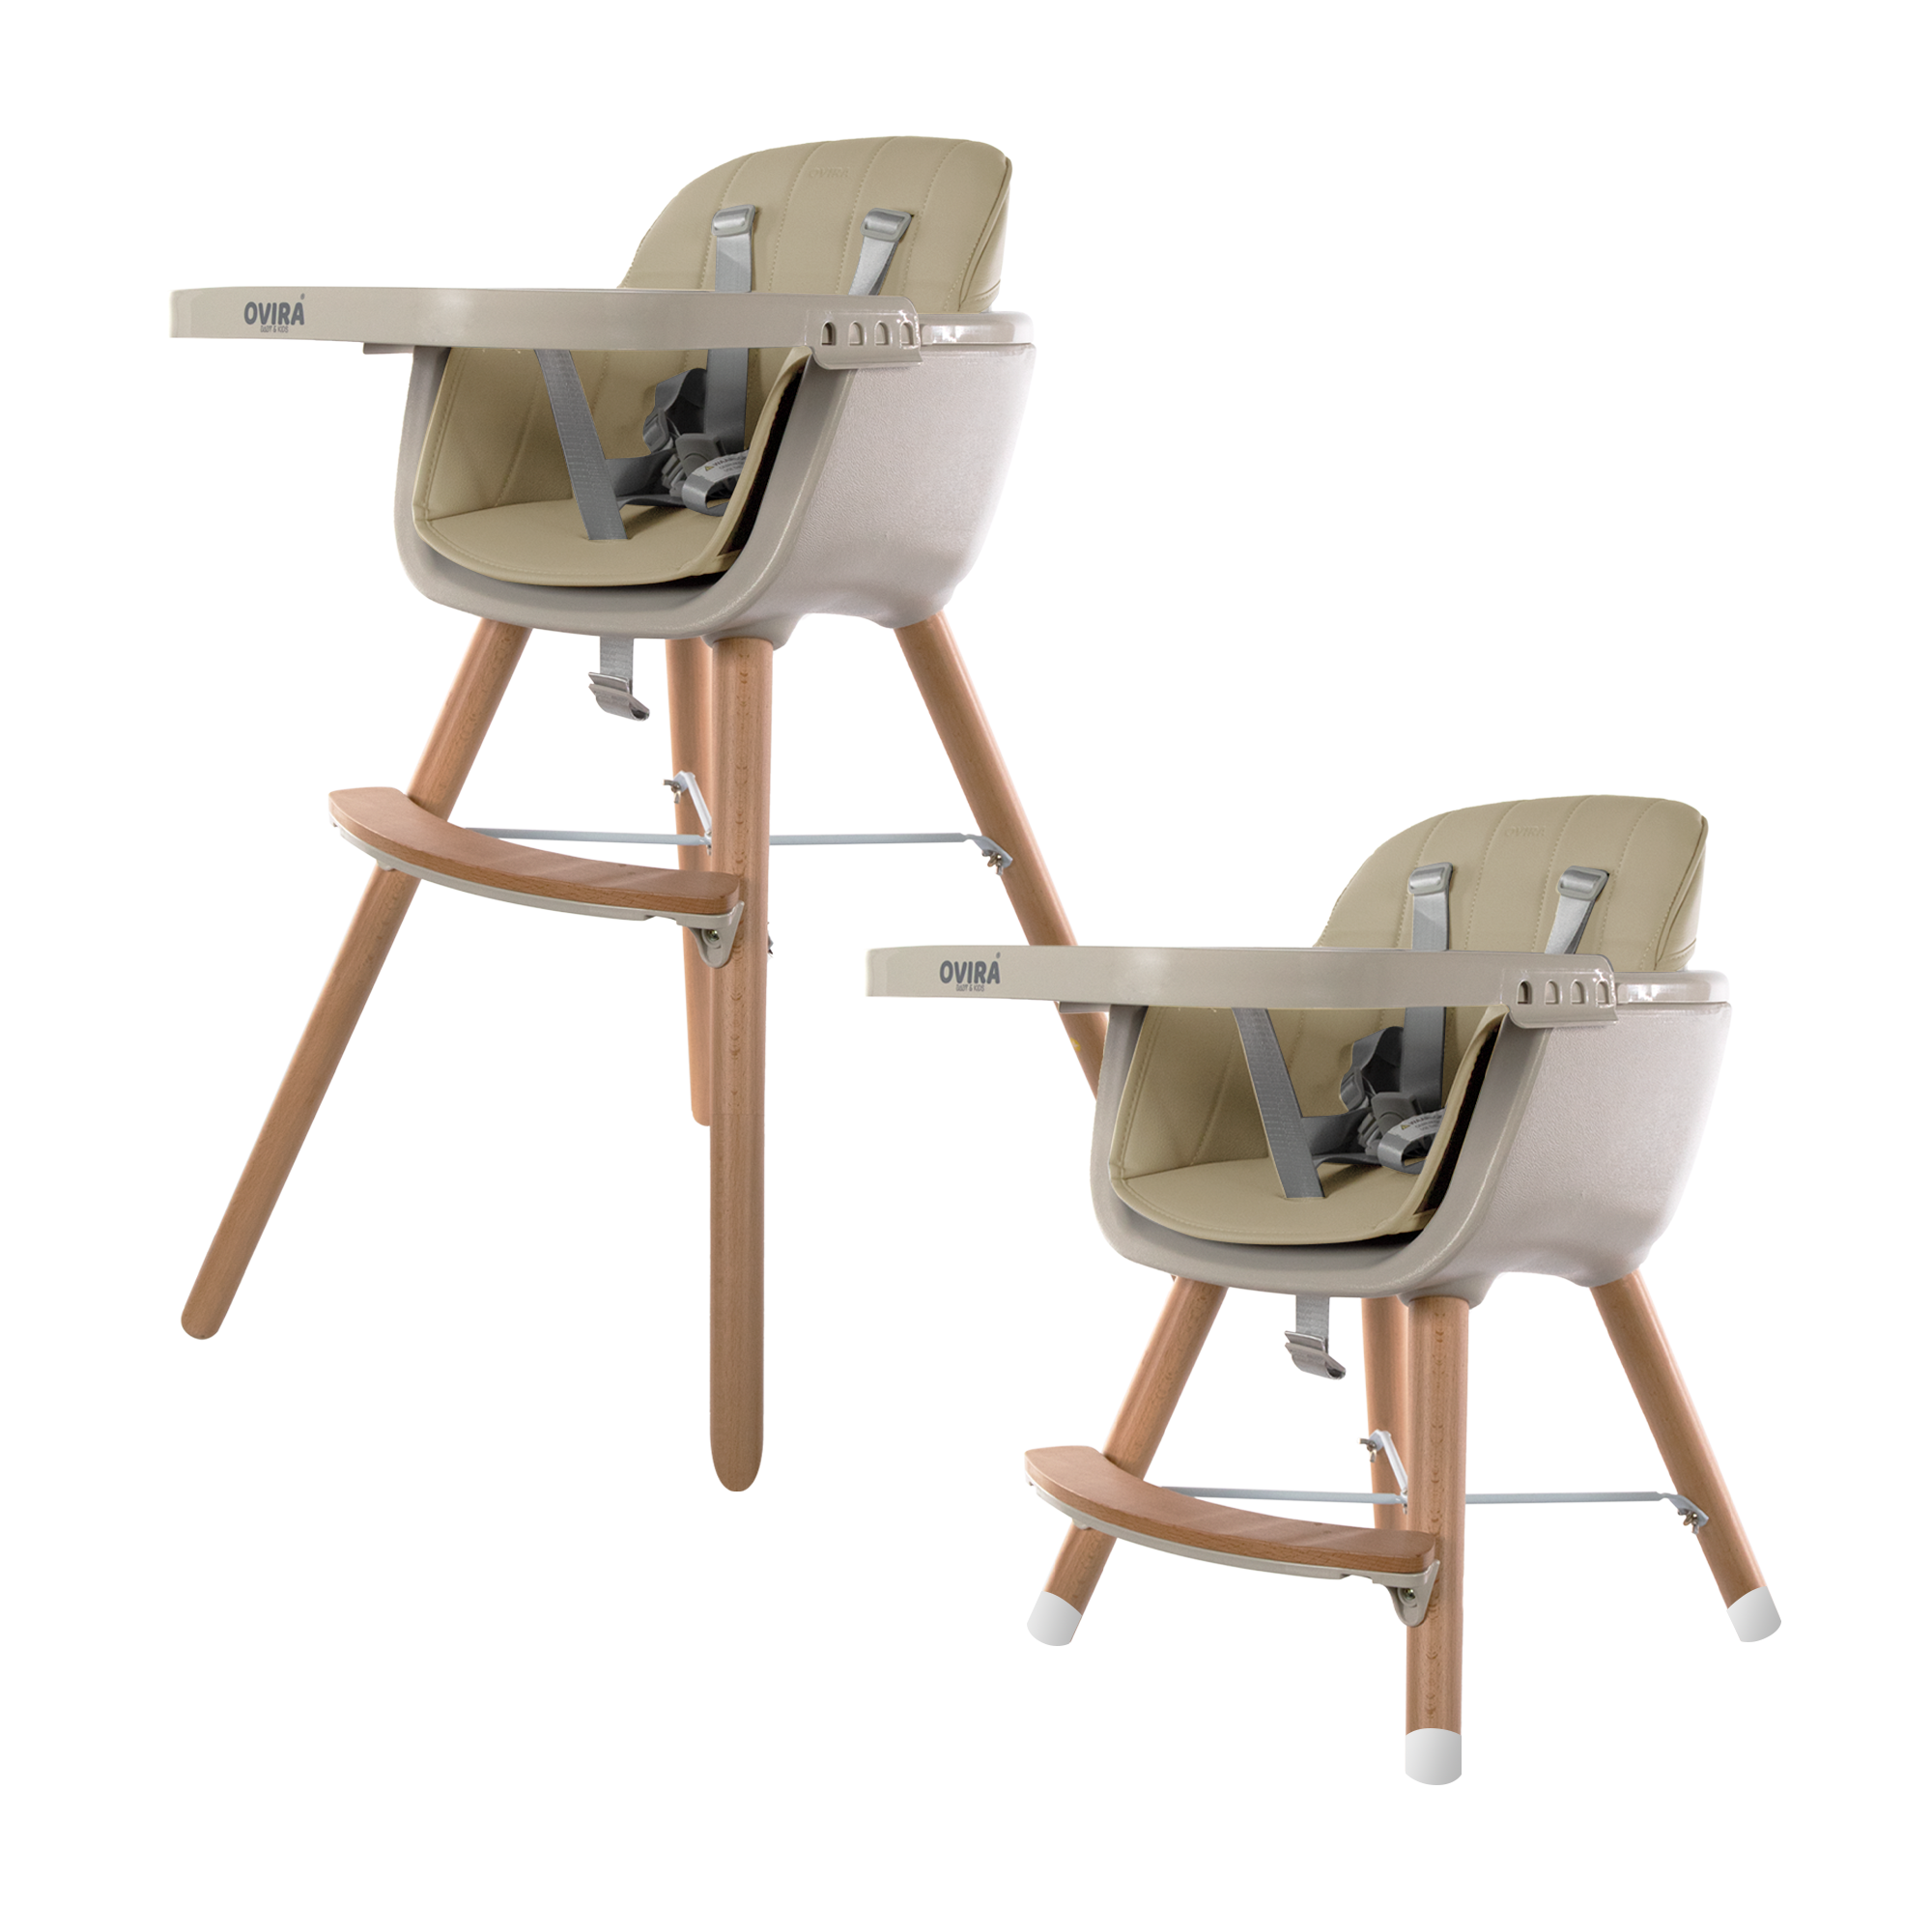 Voorlopige Arbeid verkiezen OVIRA - Kinderstoel - 2 in 1 - Meegroeistoel - Wooden beige - VOTIRA -  Lifestyle en Wonen